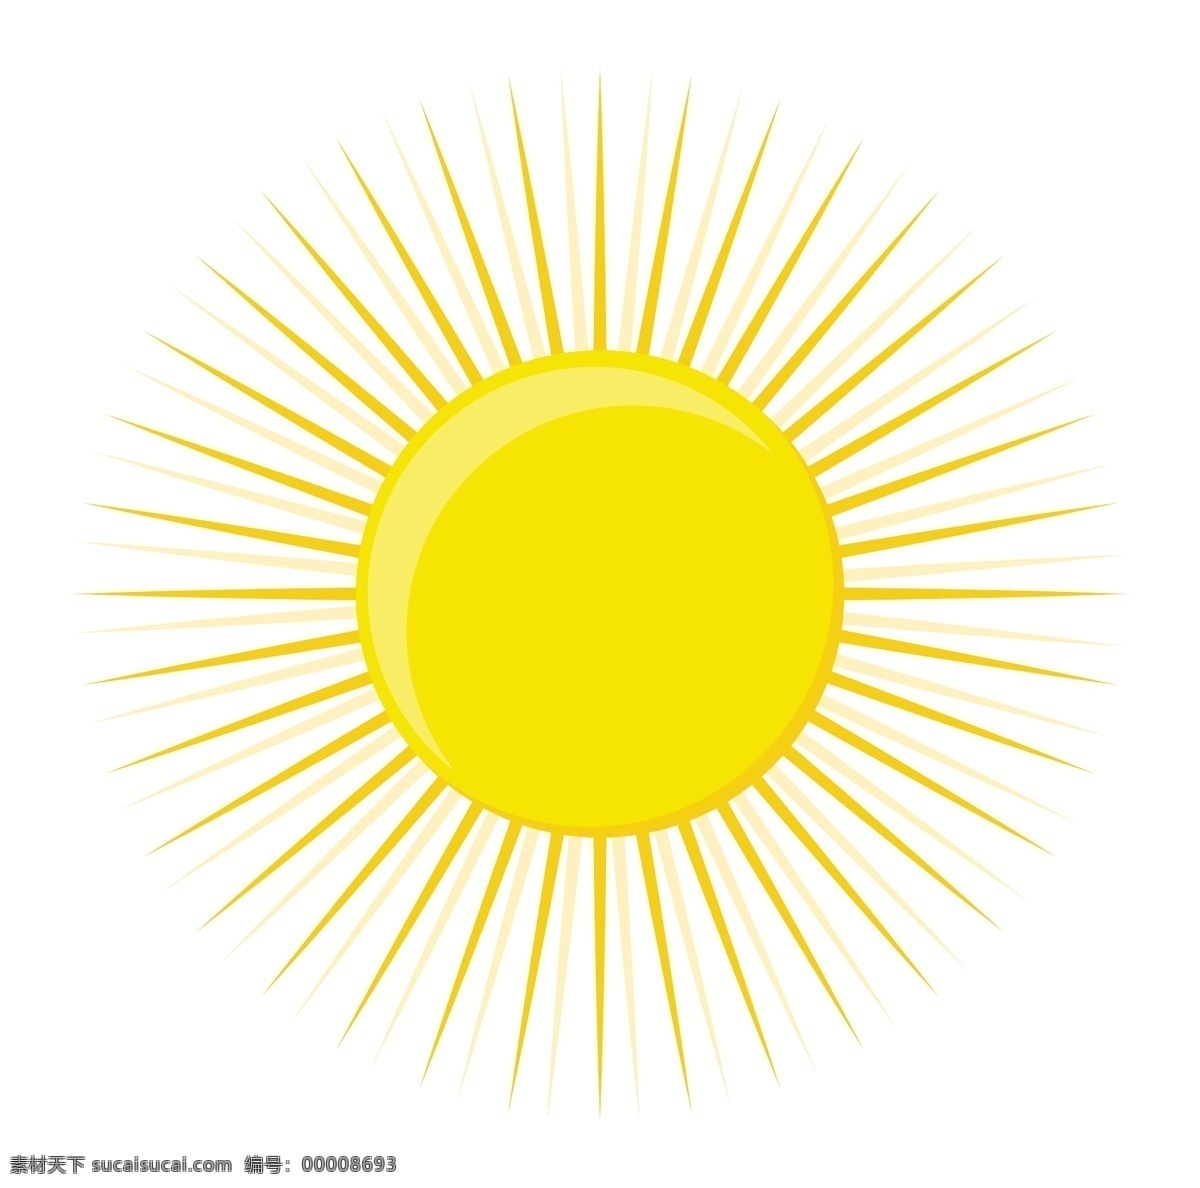 太阳 图标 太阳图标 矢量图 日常生活